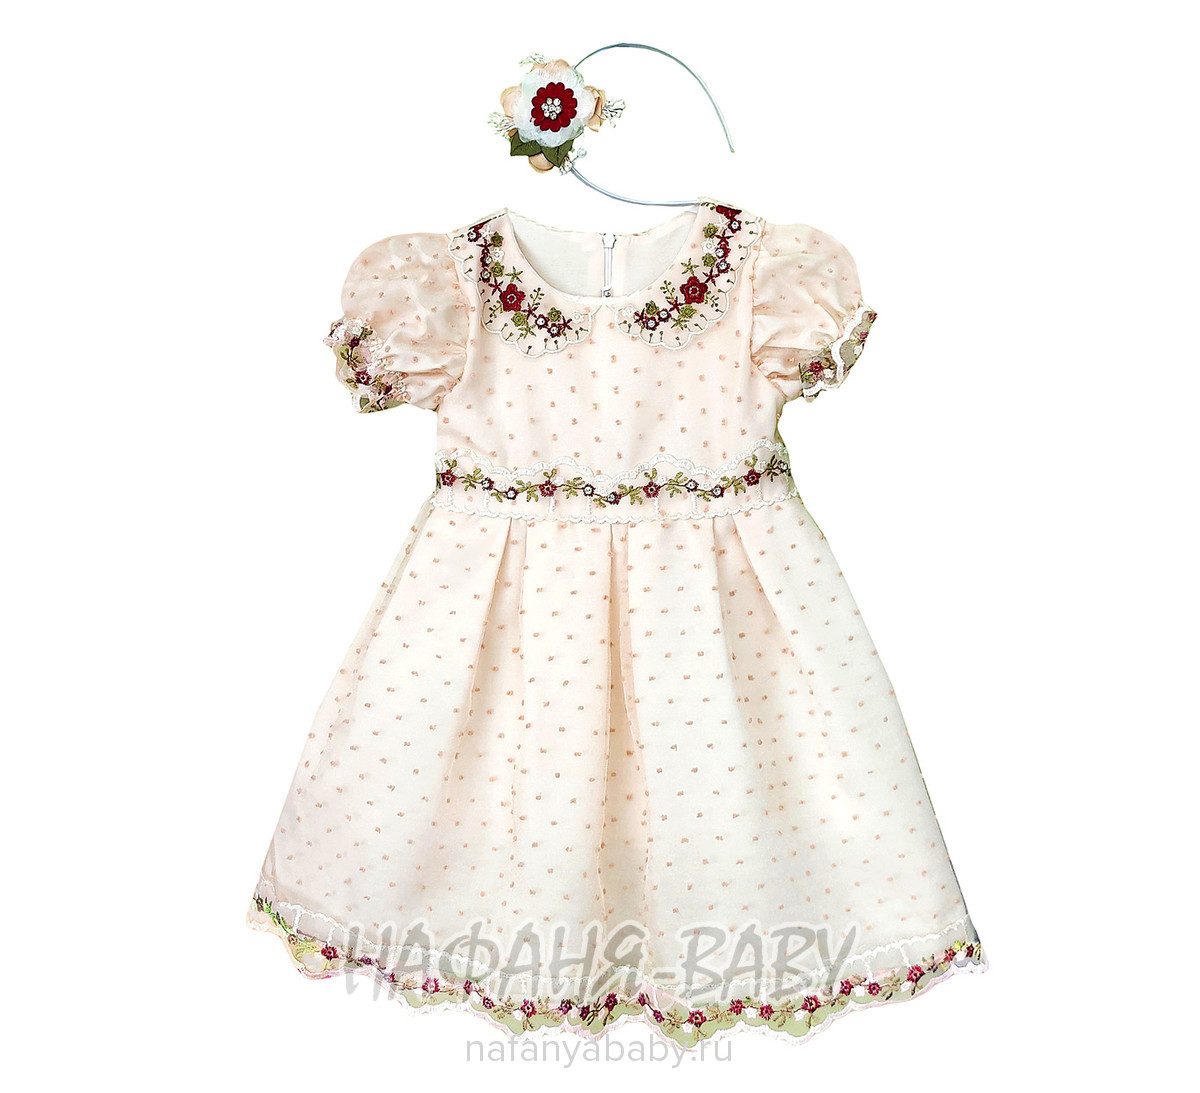 Нарядное платье + ободок A.Y.D., купить в интернет магазине Нафаня. арт: 805.